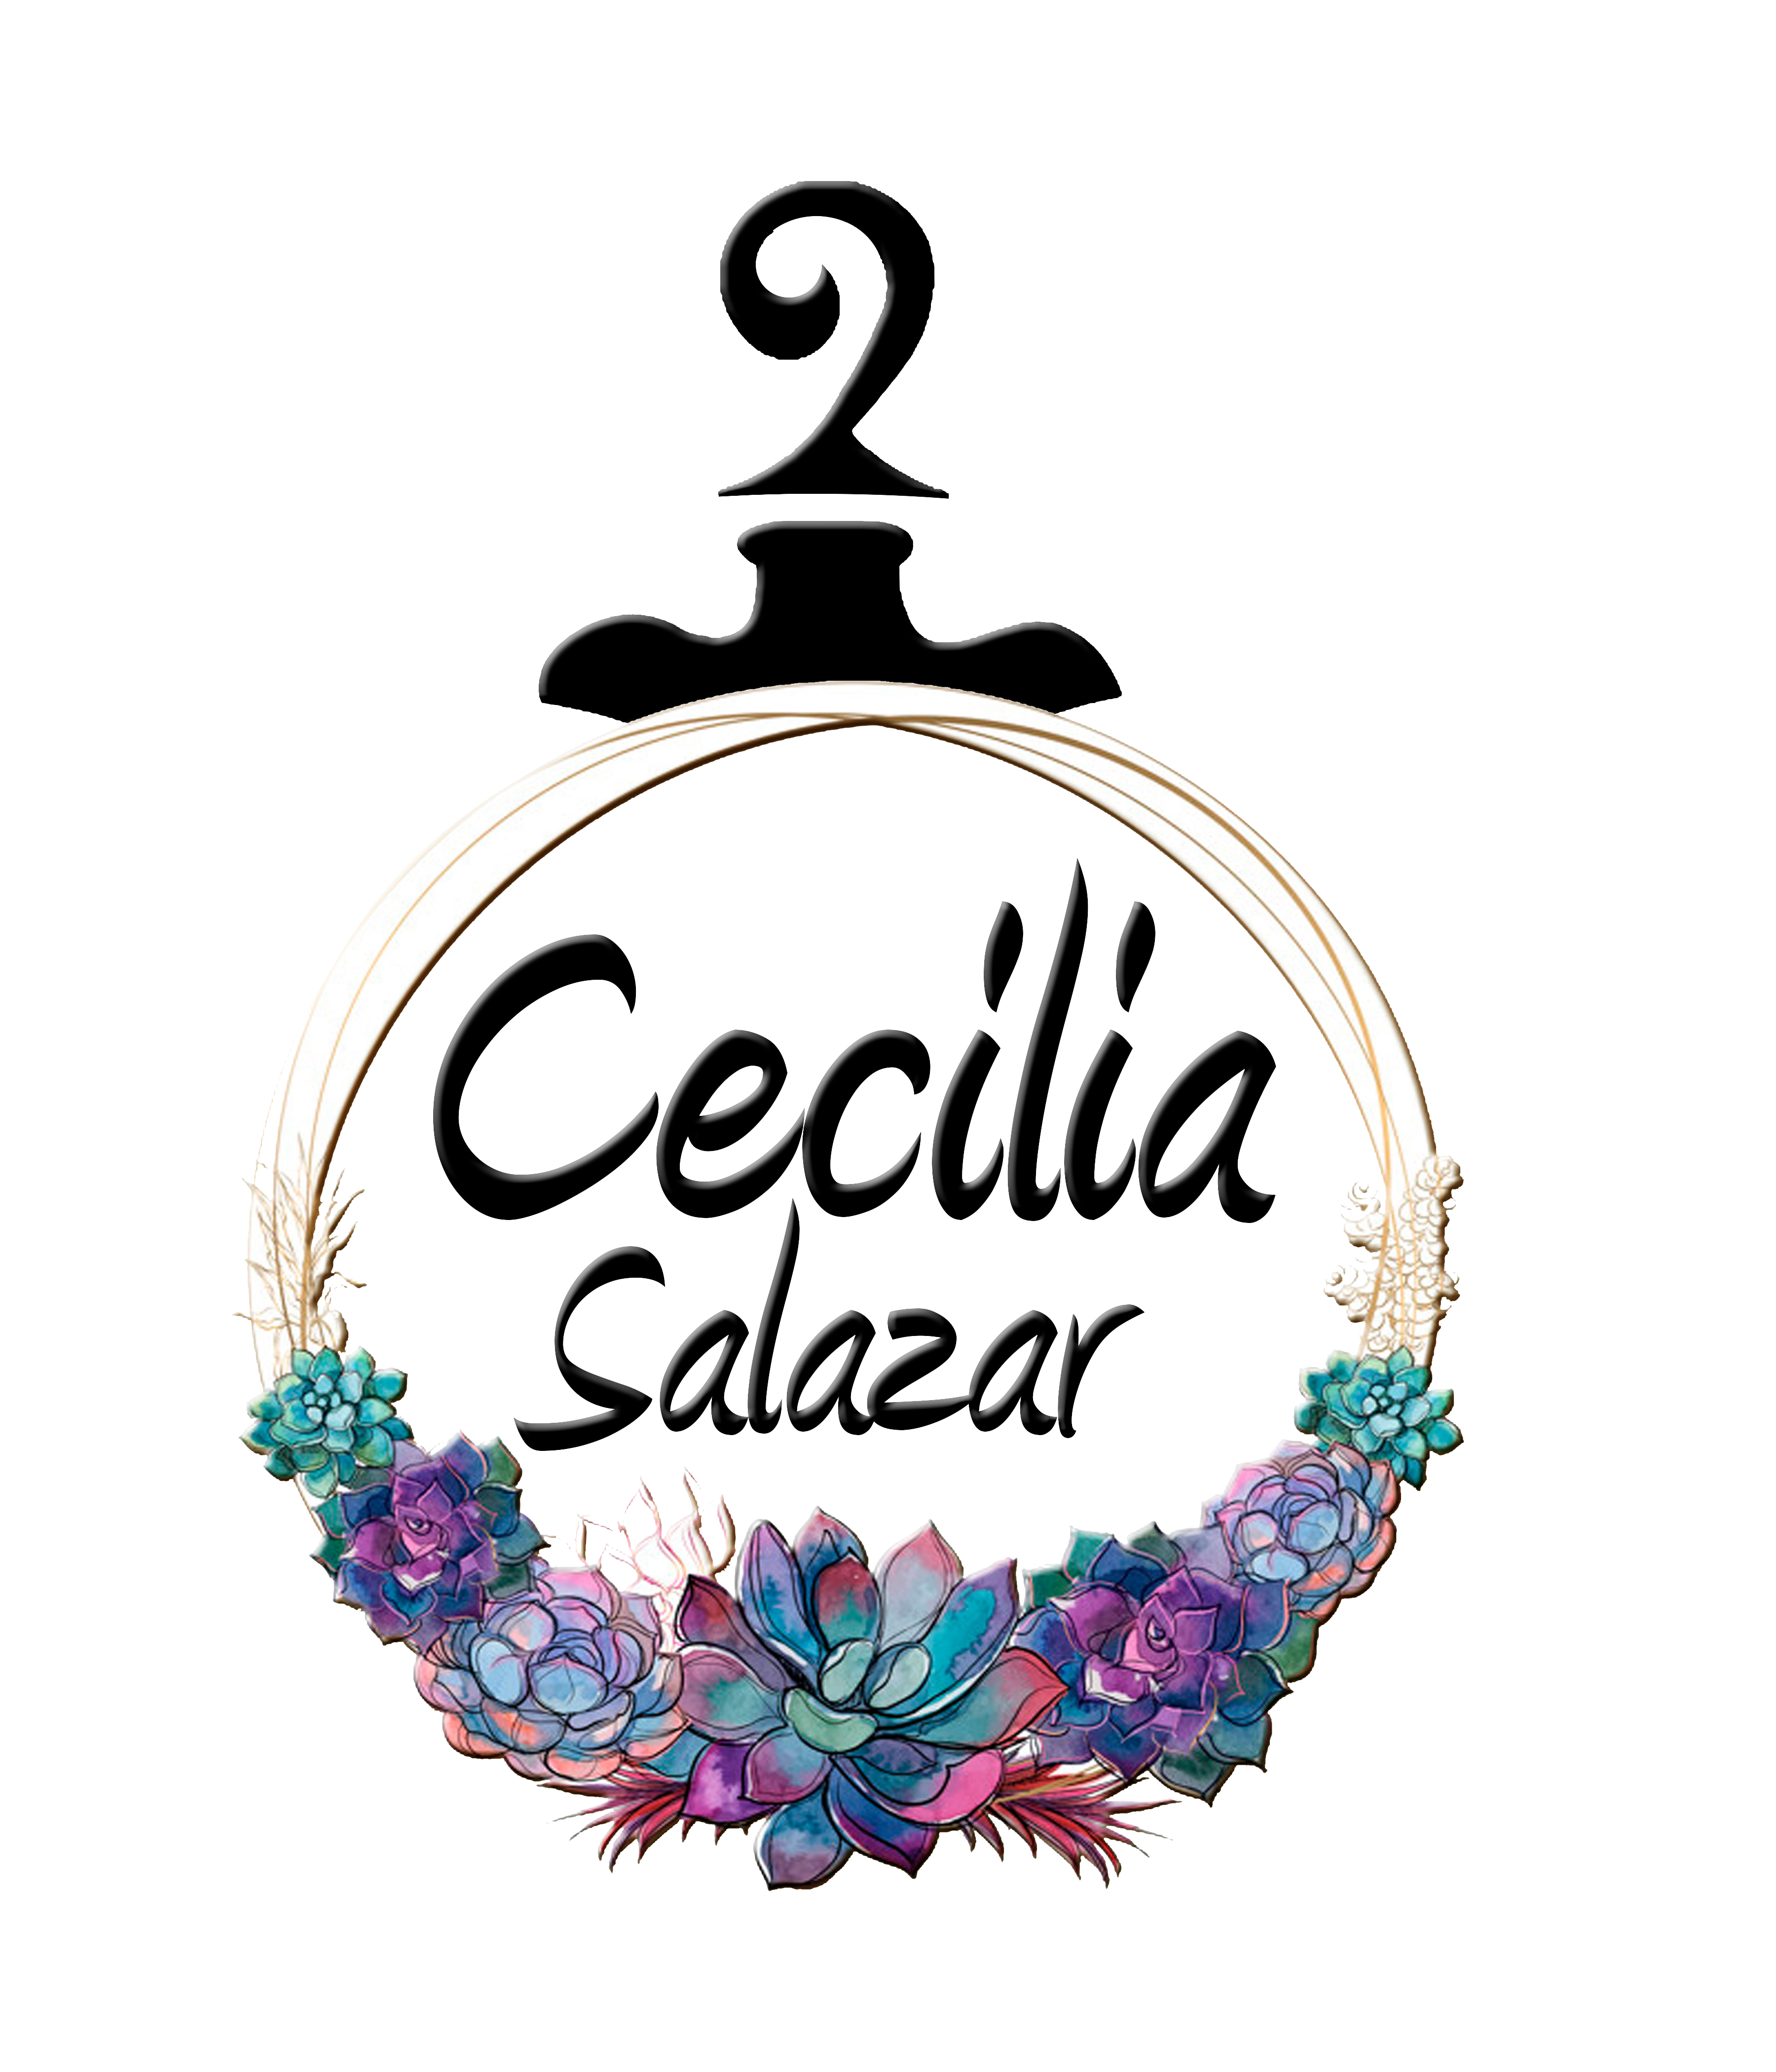 Cecilia Salazar